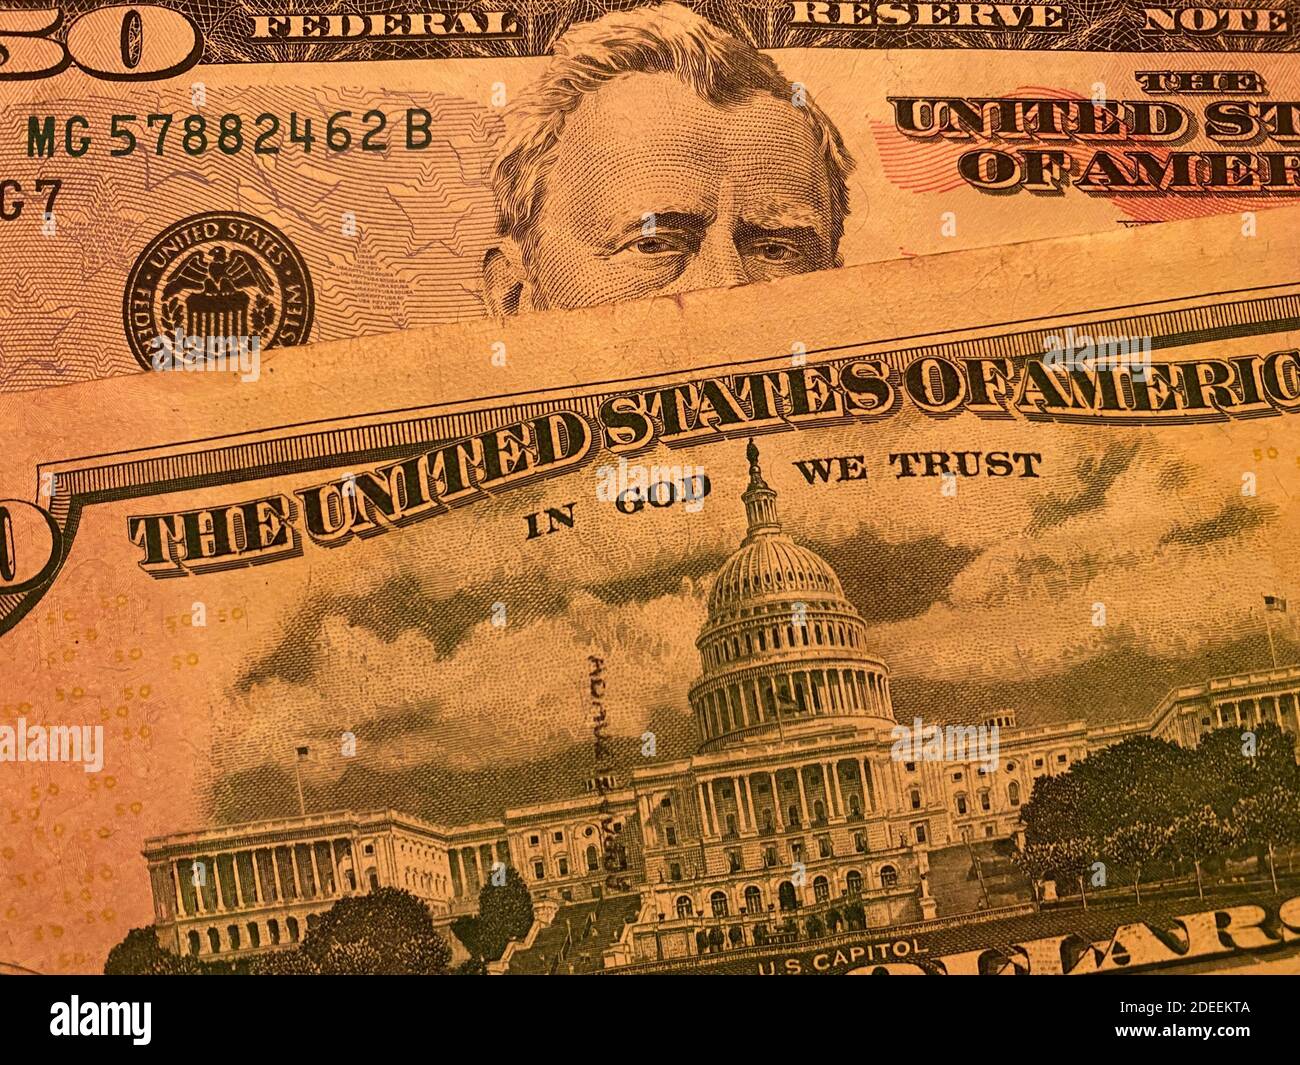 Obwohl es in den Vereinigten Staaten eine Trennung von Kirche und Staat gibt, heißt es in seiner Währung: "In God We Trust" Stockfoto